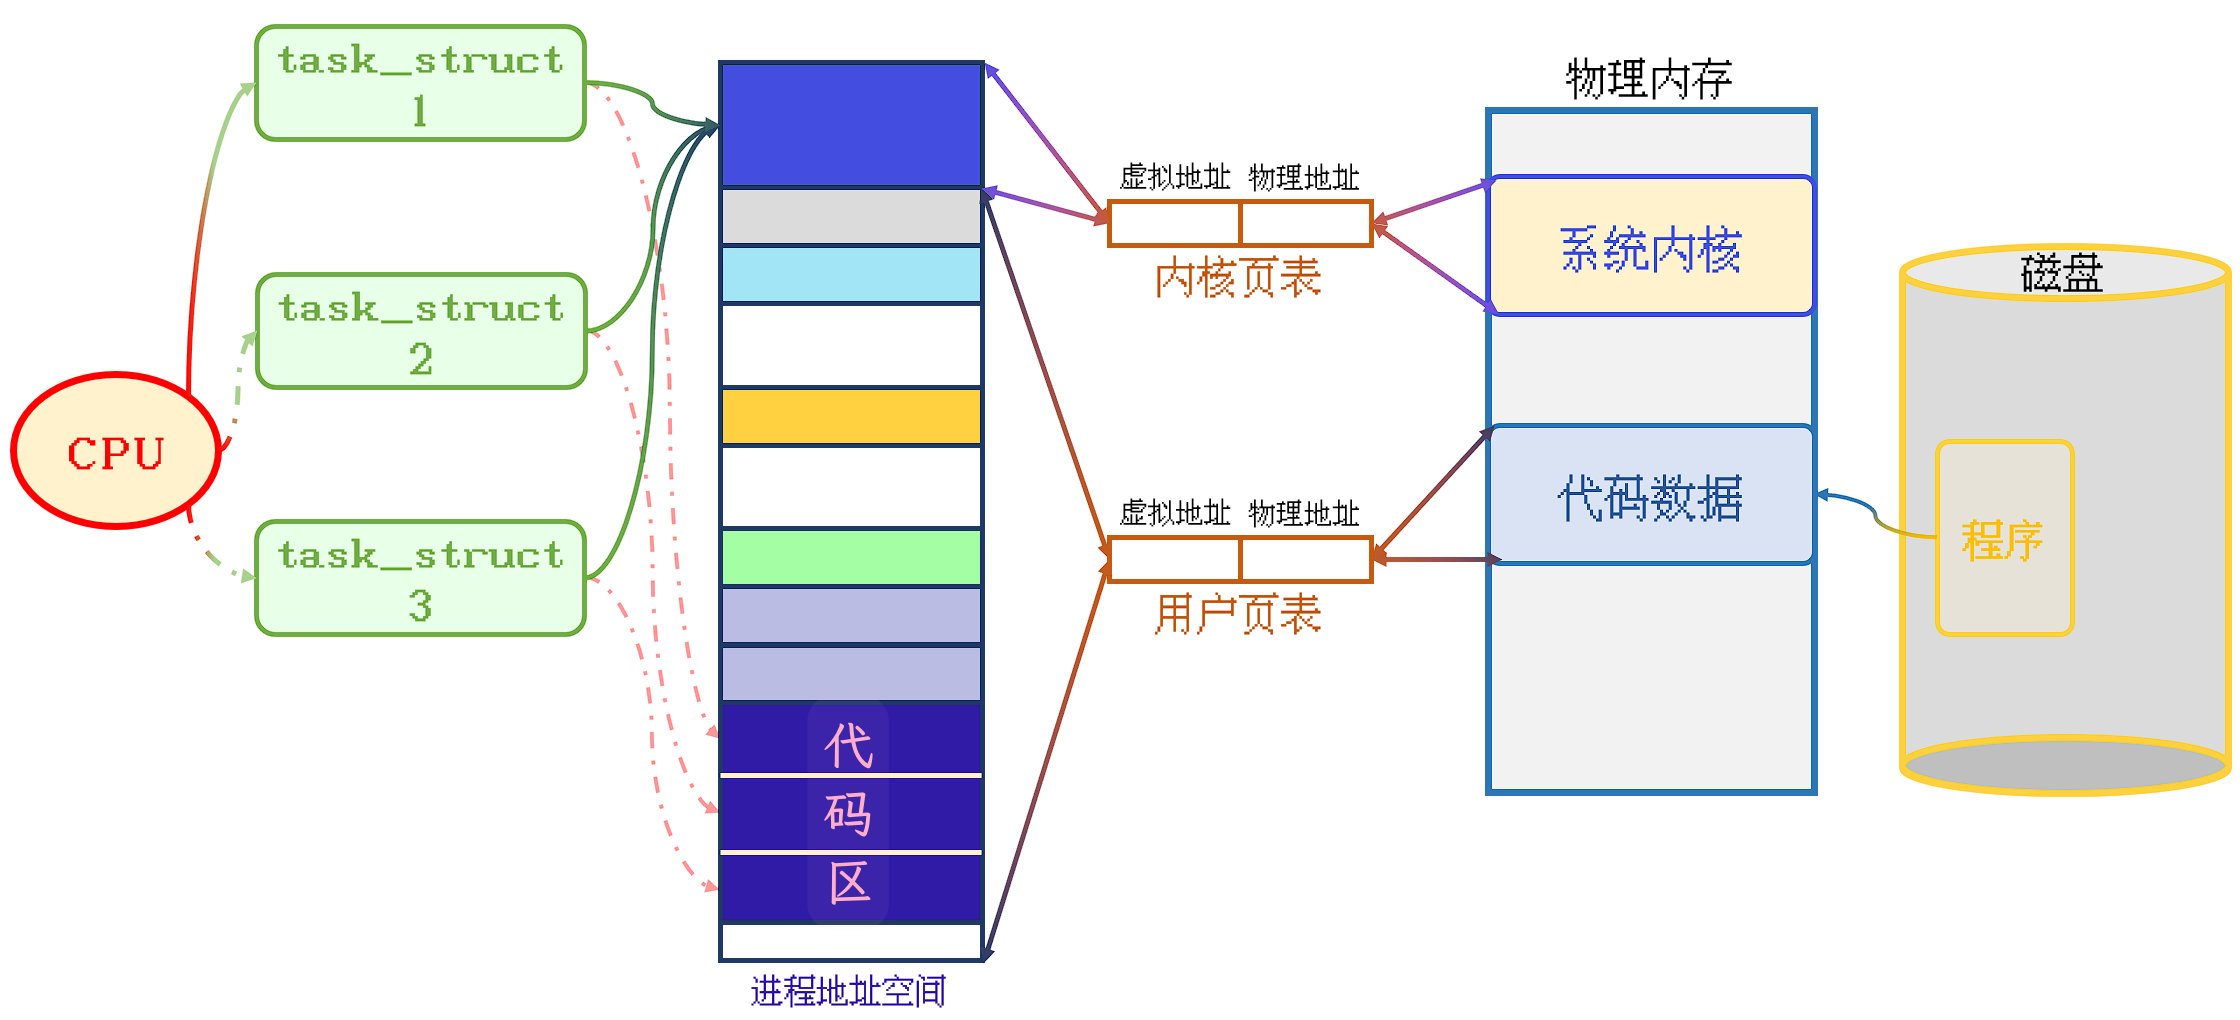 PCB与代码区之间连接的红色虚线表示, PCB实际负责执行的代码区域